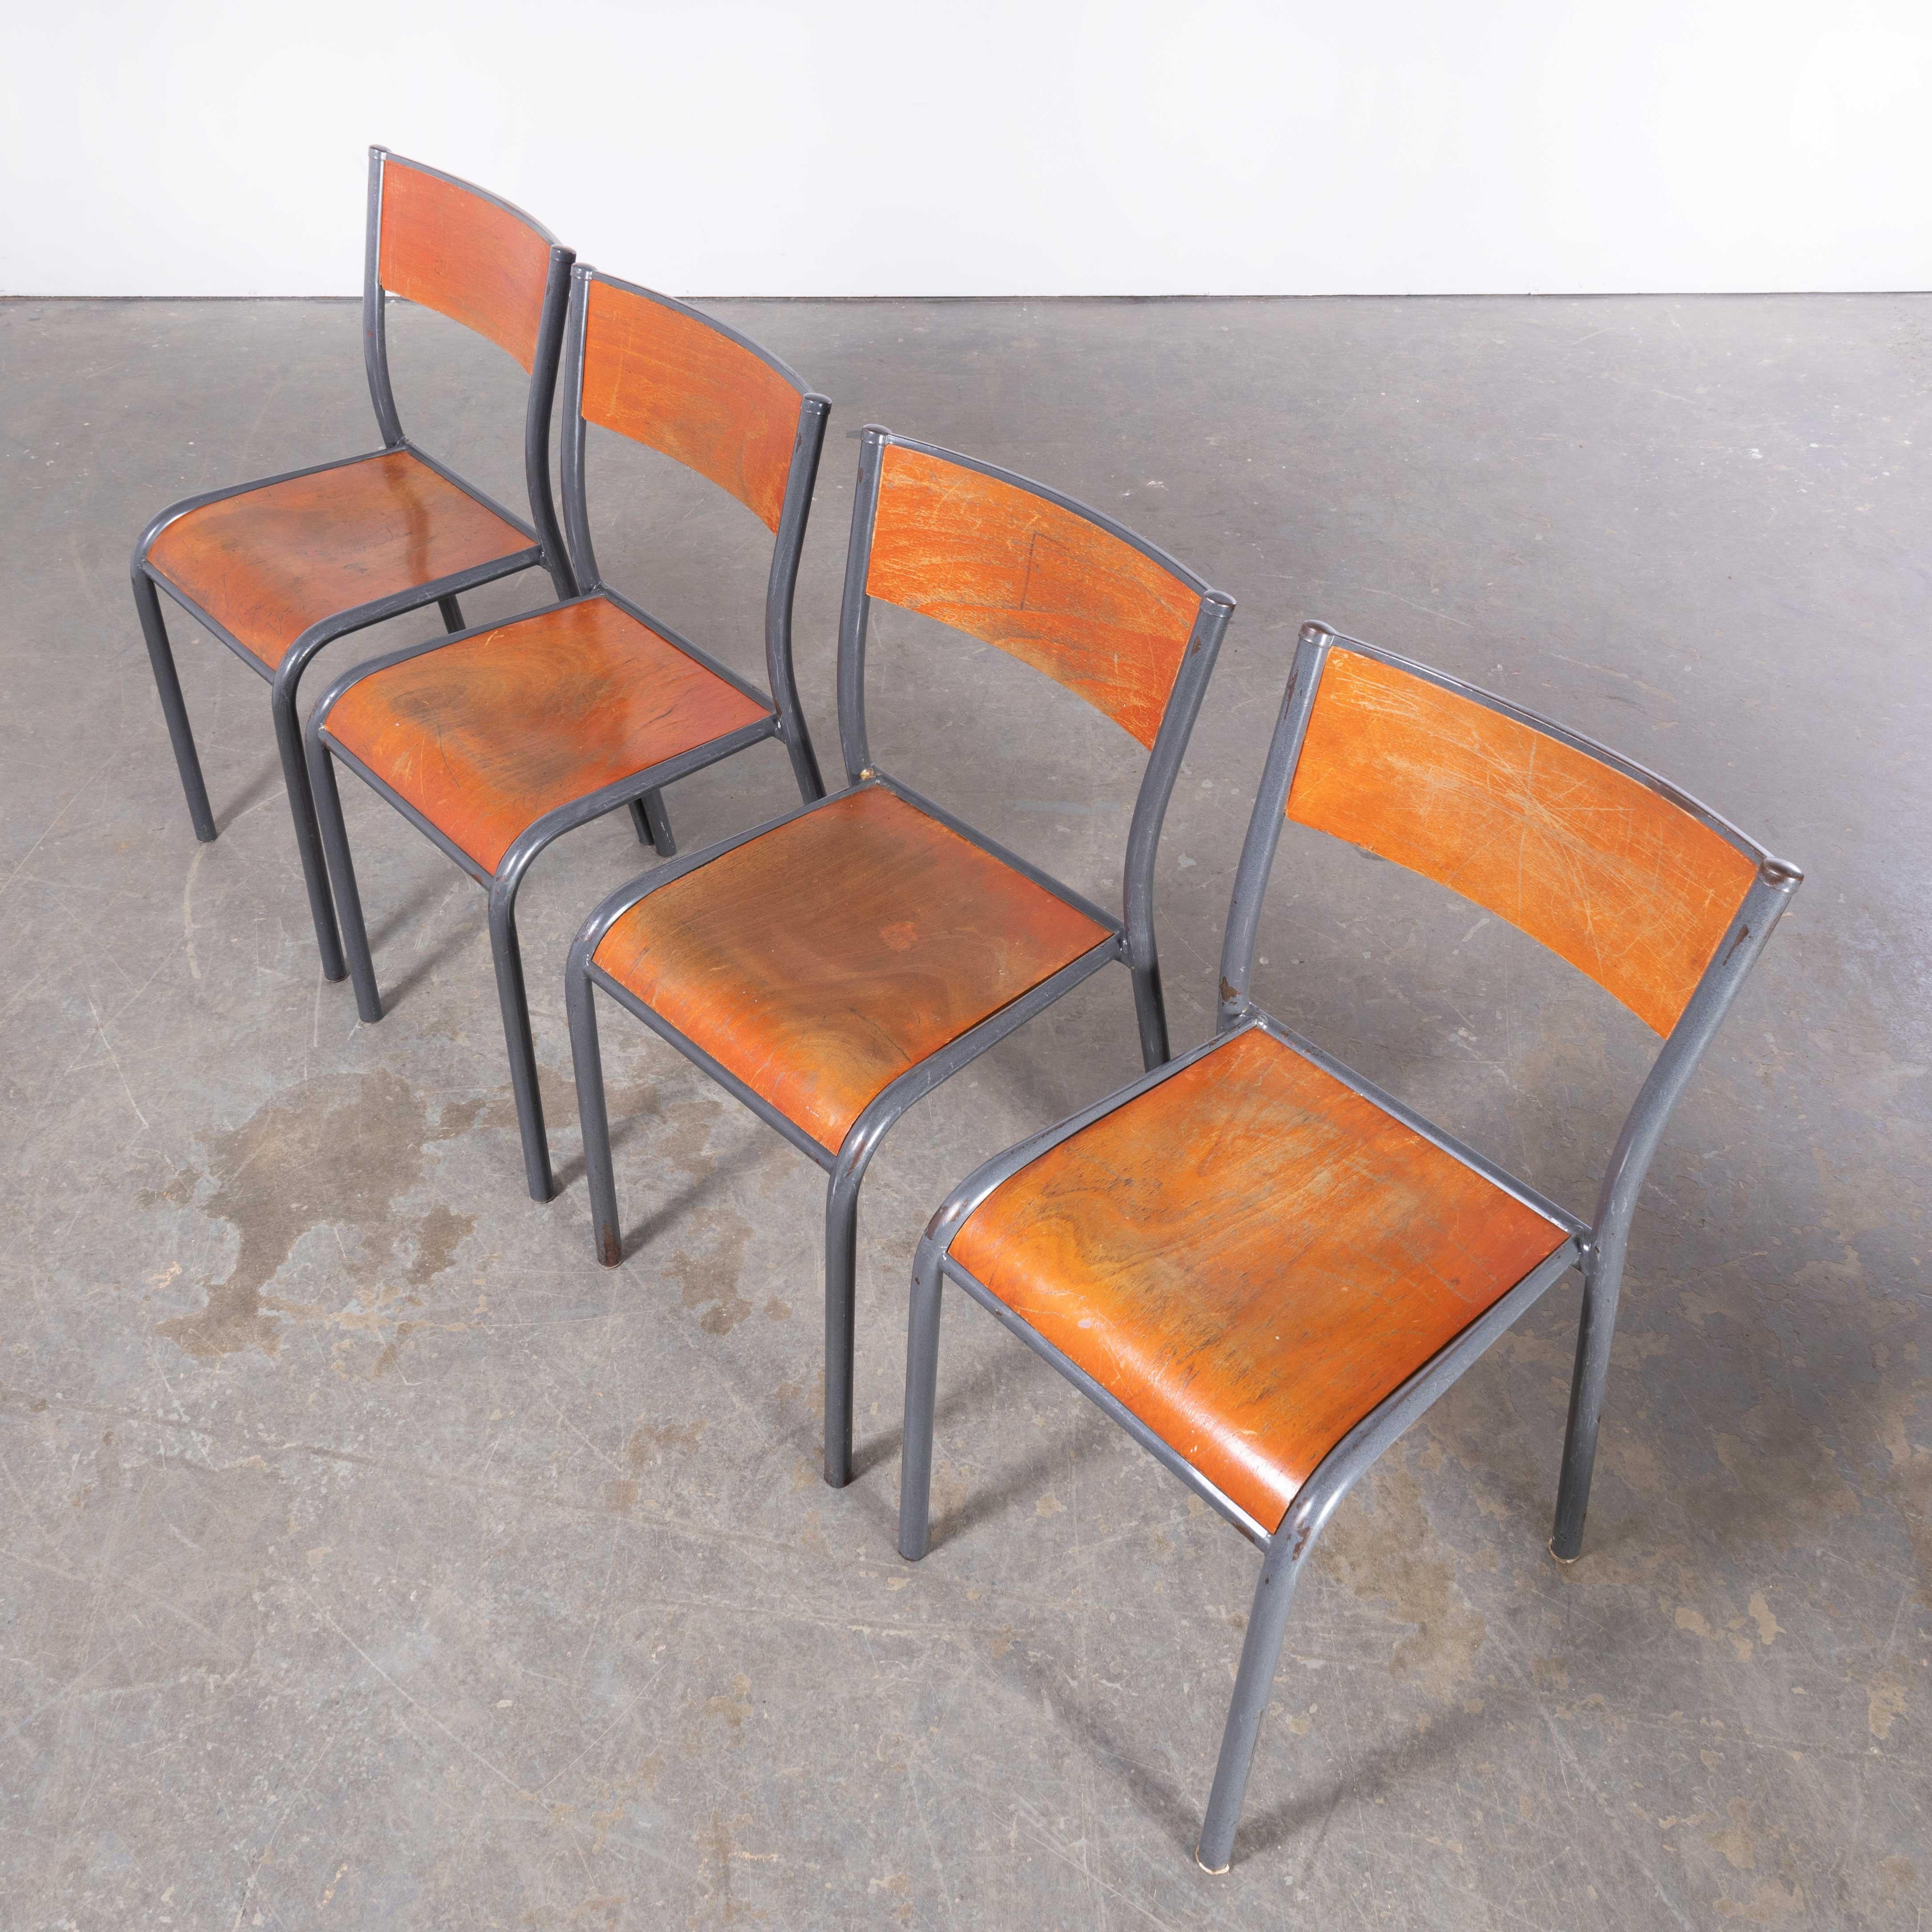 1950's French Mullca Hellgraue Esszimmerstühle - Satz von vier
1950's French Mullca Light Grey Dining Chairs - Set Of Four. Einer unserer Lieblingsstühle. 1947 gründeten Robert Muller und Gaston Cavaillon das Unternehmen, das den wohl berühmtesten